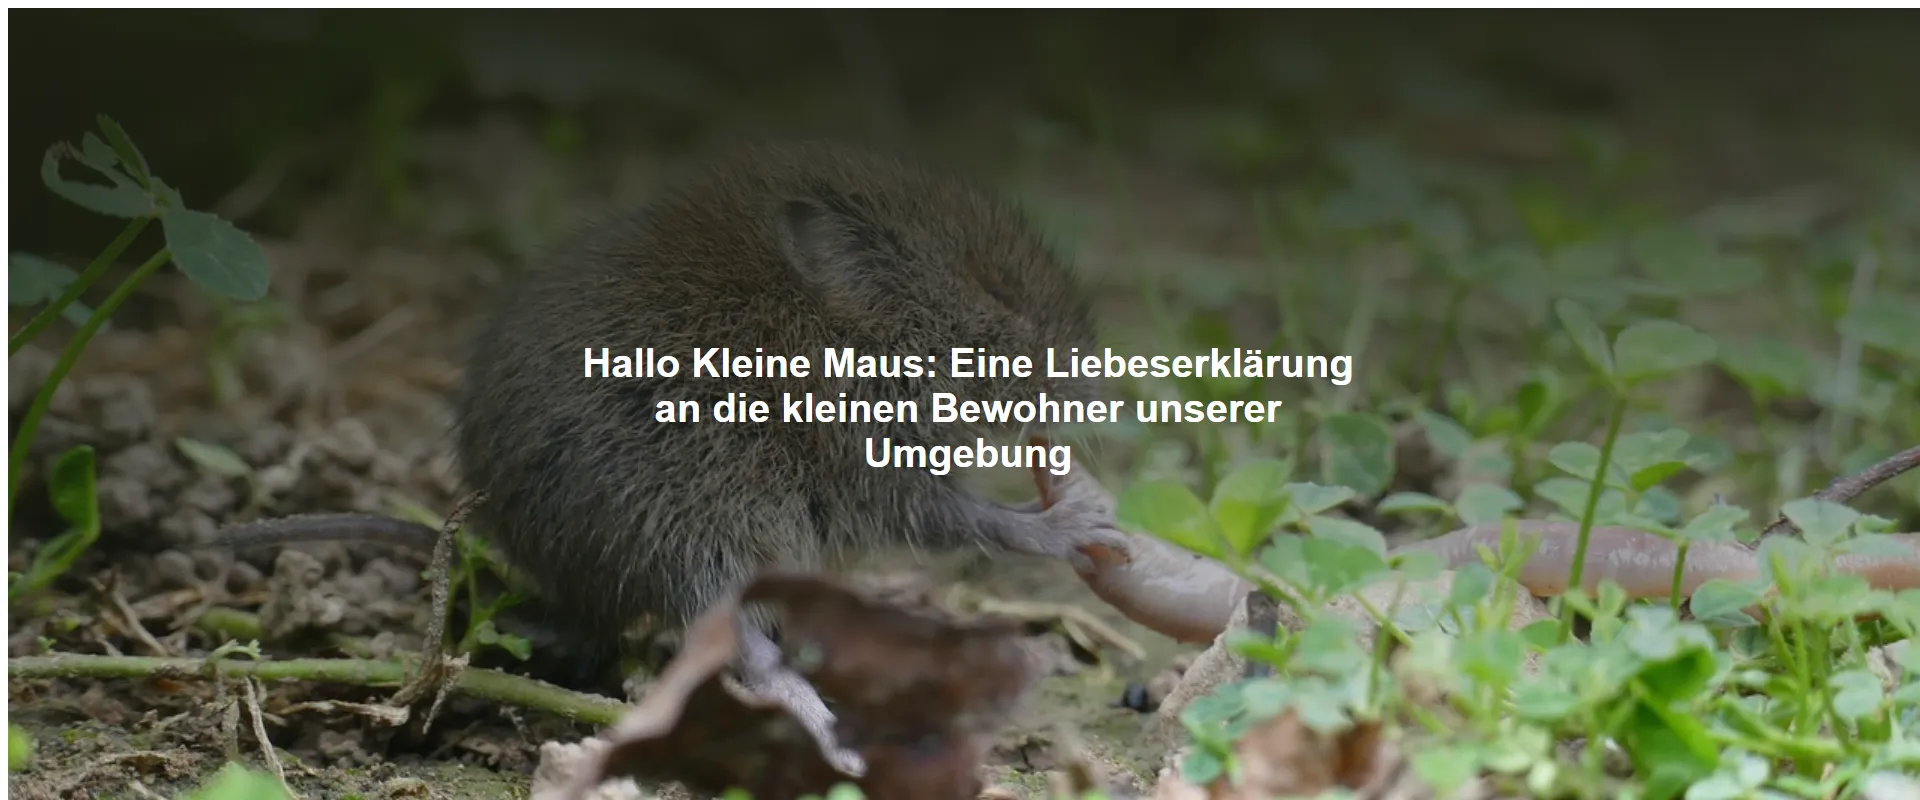 Hallo Kleine Maus – Eine Liebeserklärung an die kleinen Bewohner unserer Umgebung